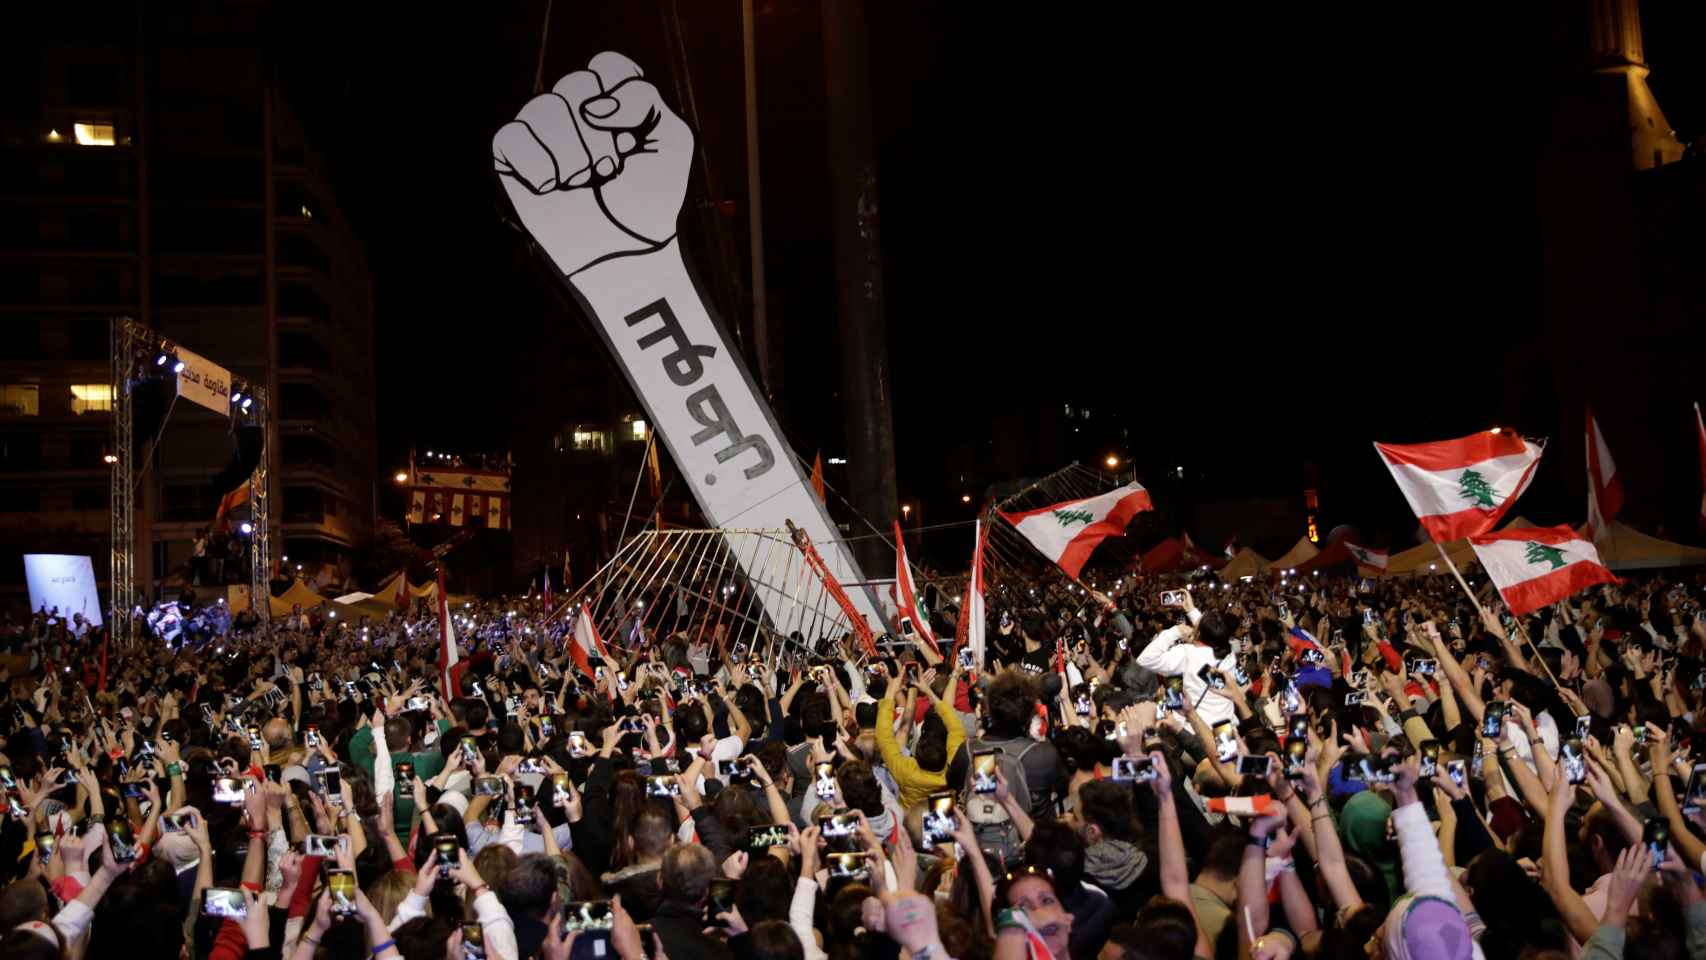 Los libaneses llevan meses protestando por la situación que se vive en el país.